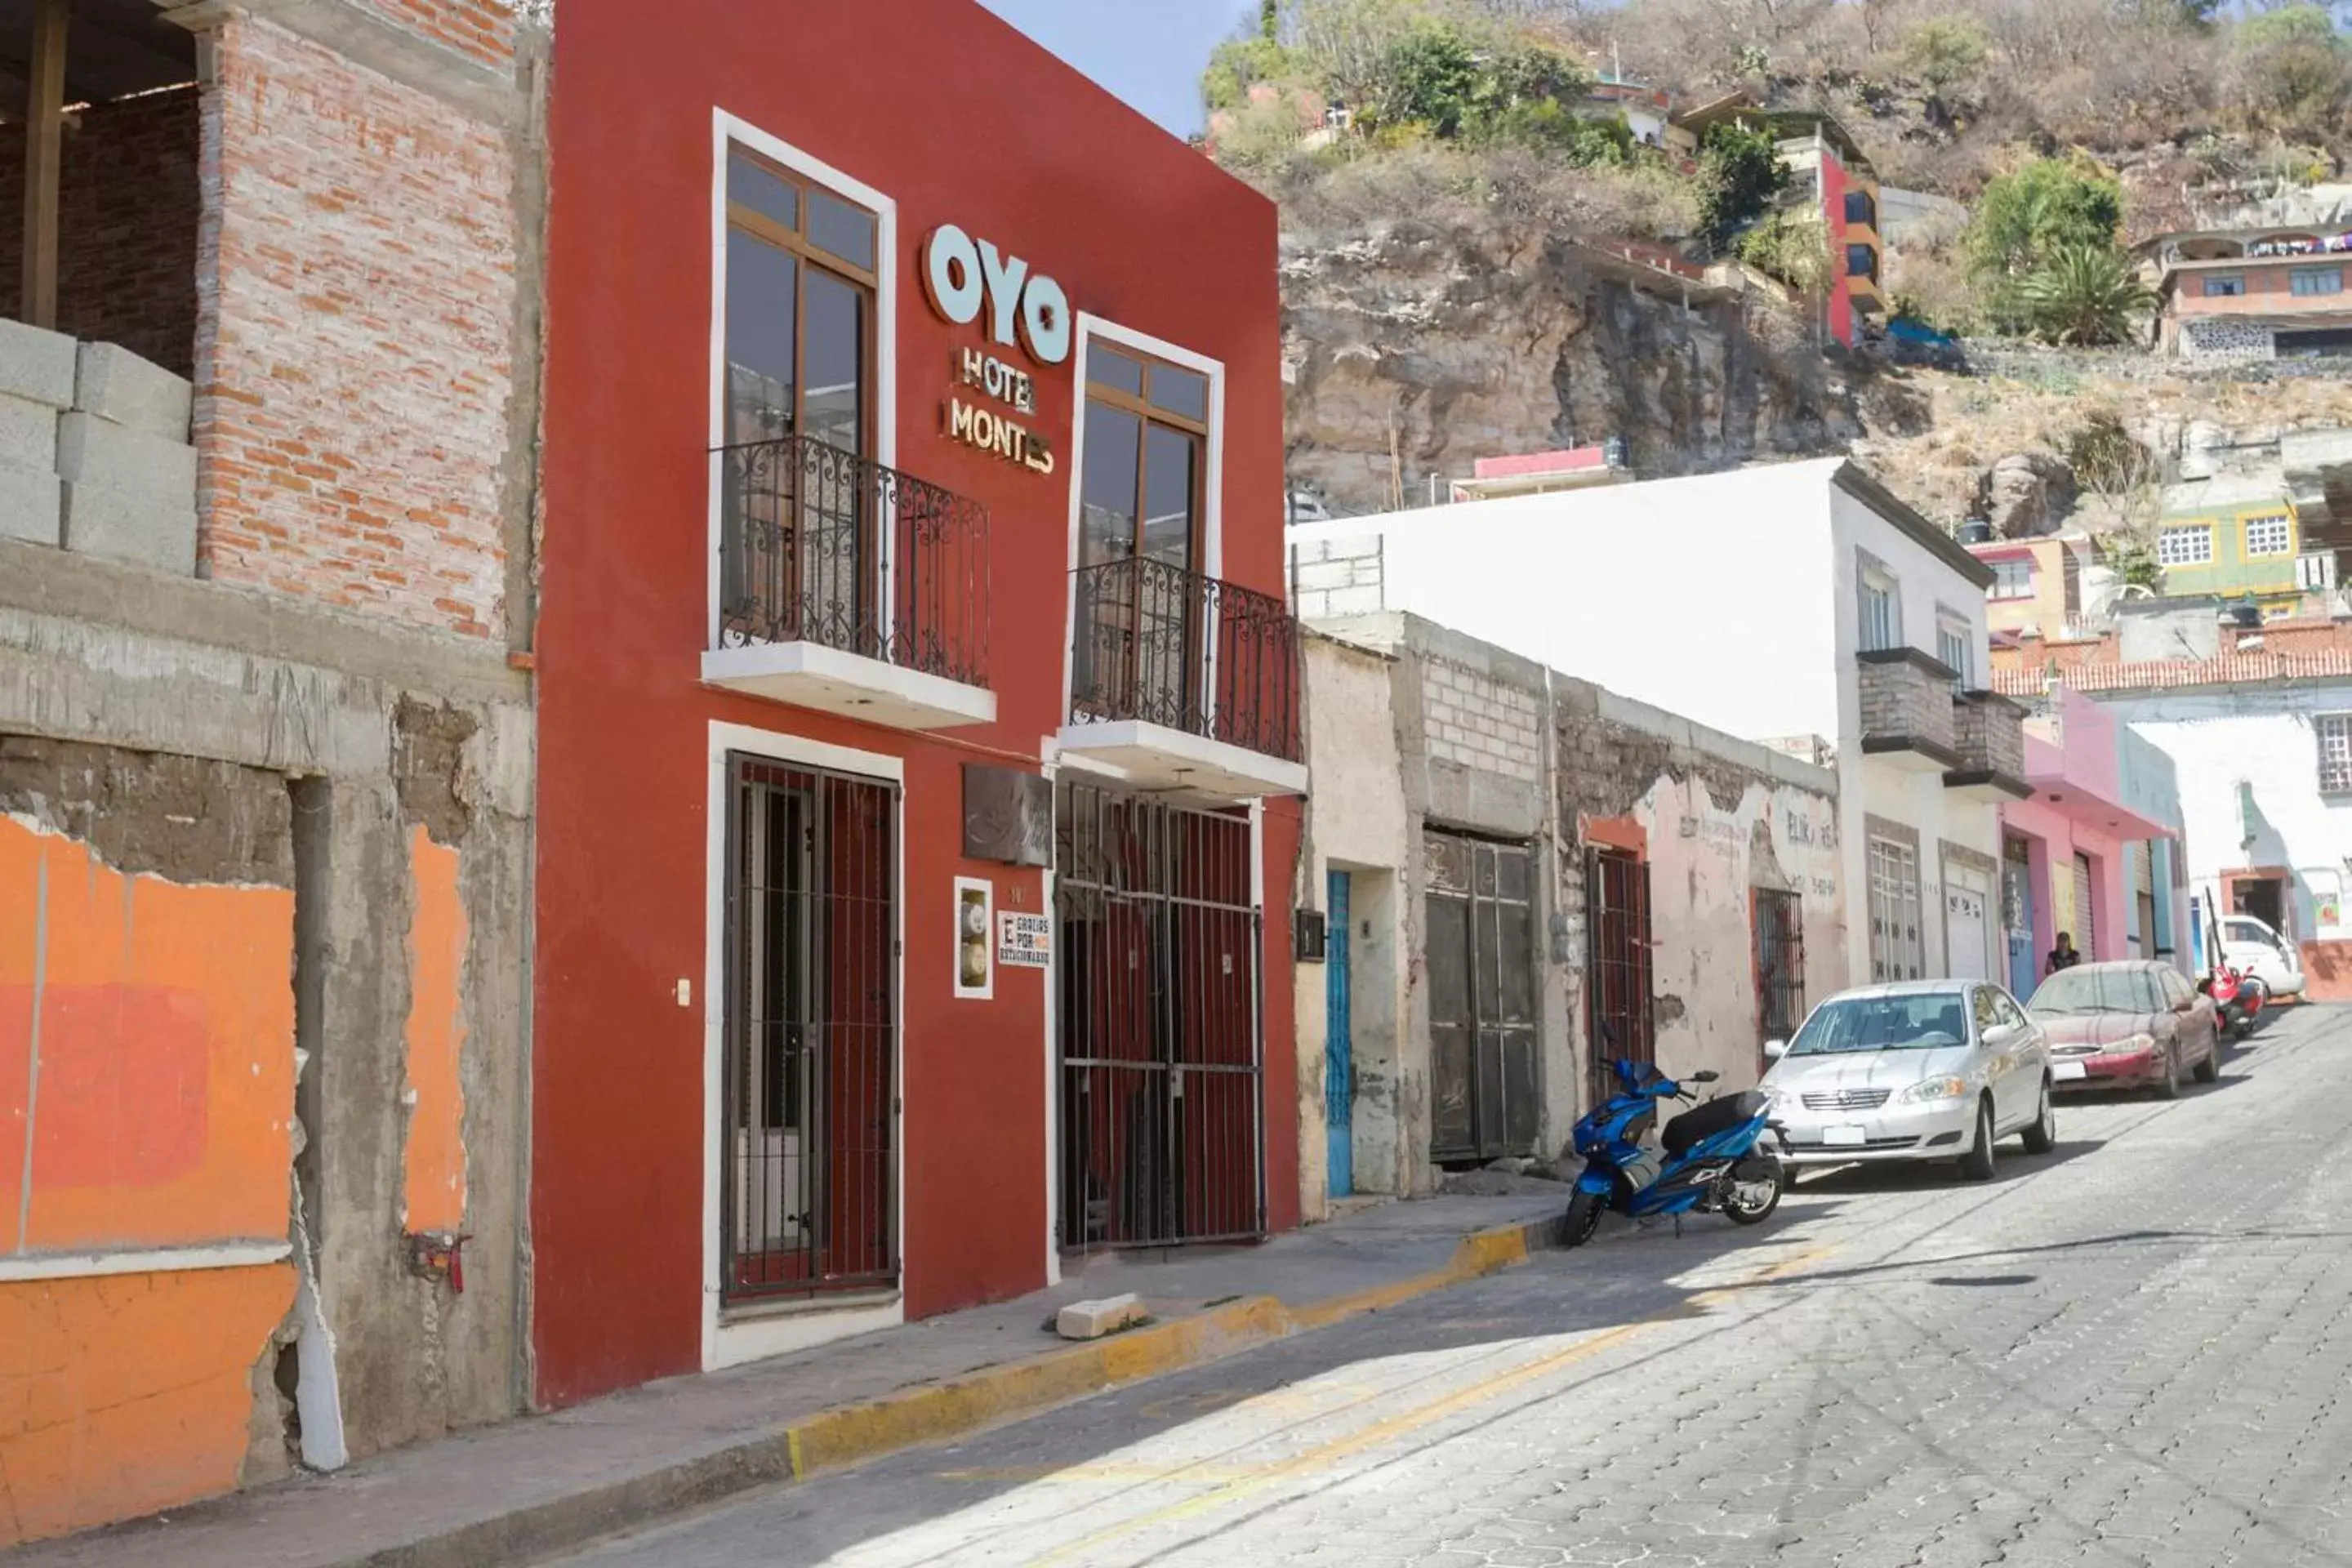 Facade/entrance in OYO Hotel Montes, Atlixco Puebla